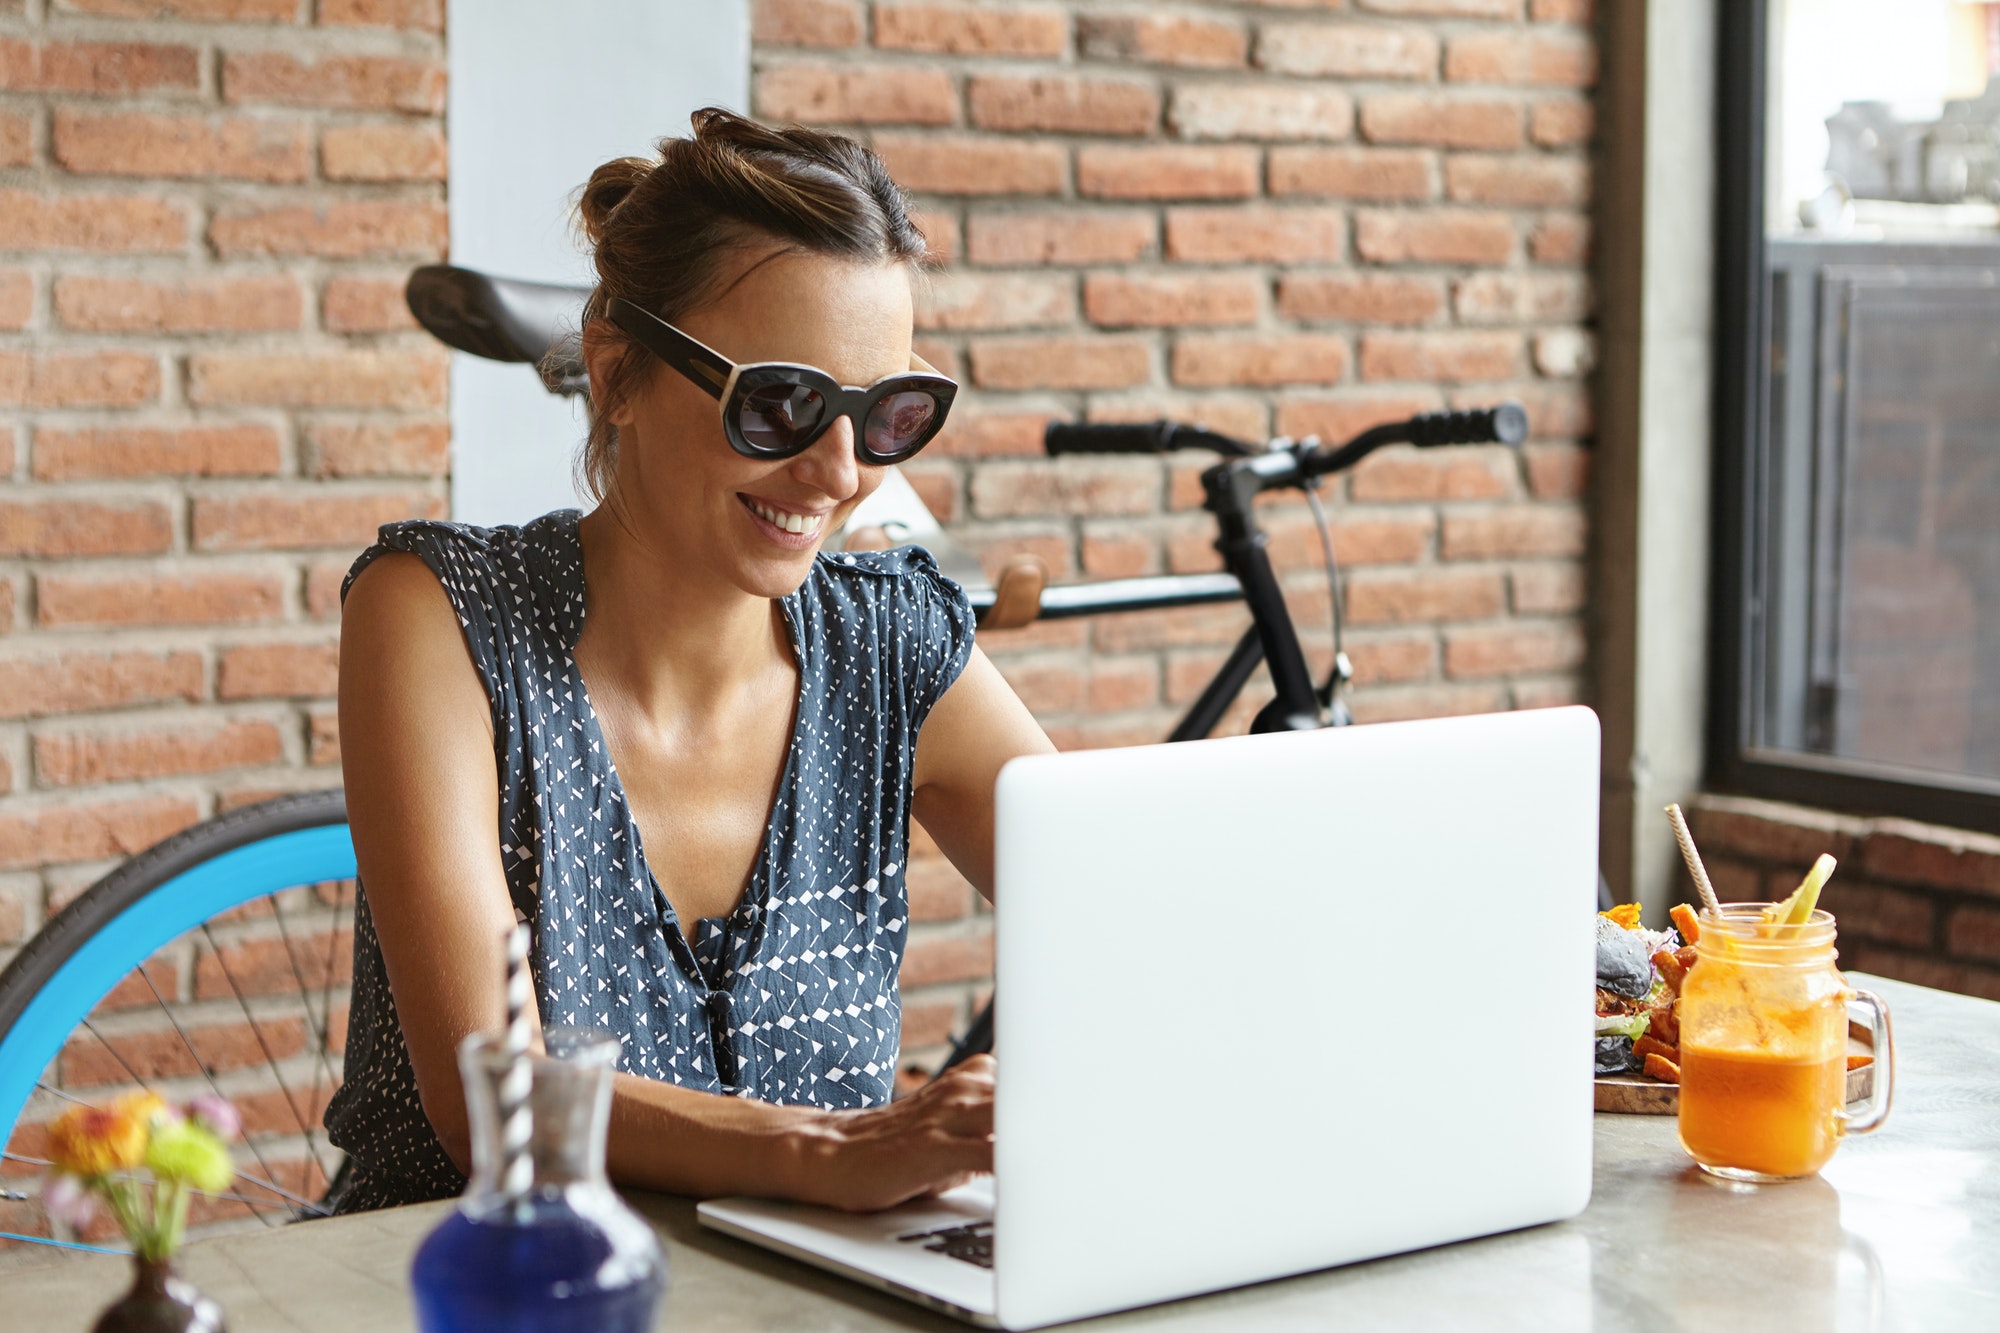 Gelukkige vrouwelijke blogger die een nieuw bericht schrijft op haar blog, met een snelle internetverbinding, zittend op